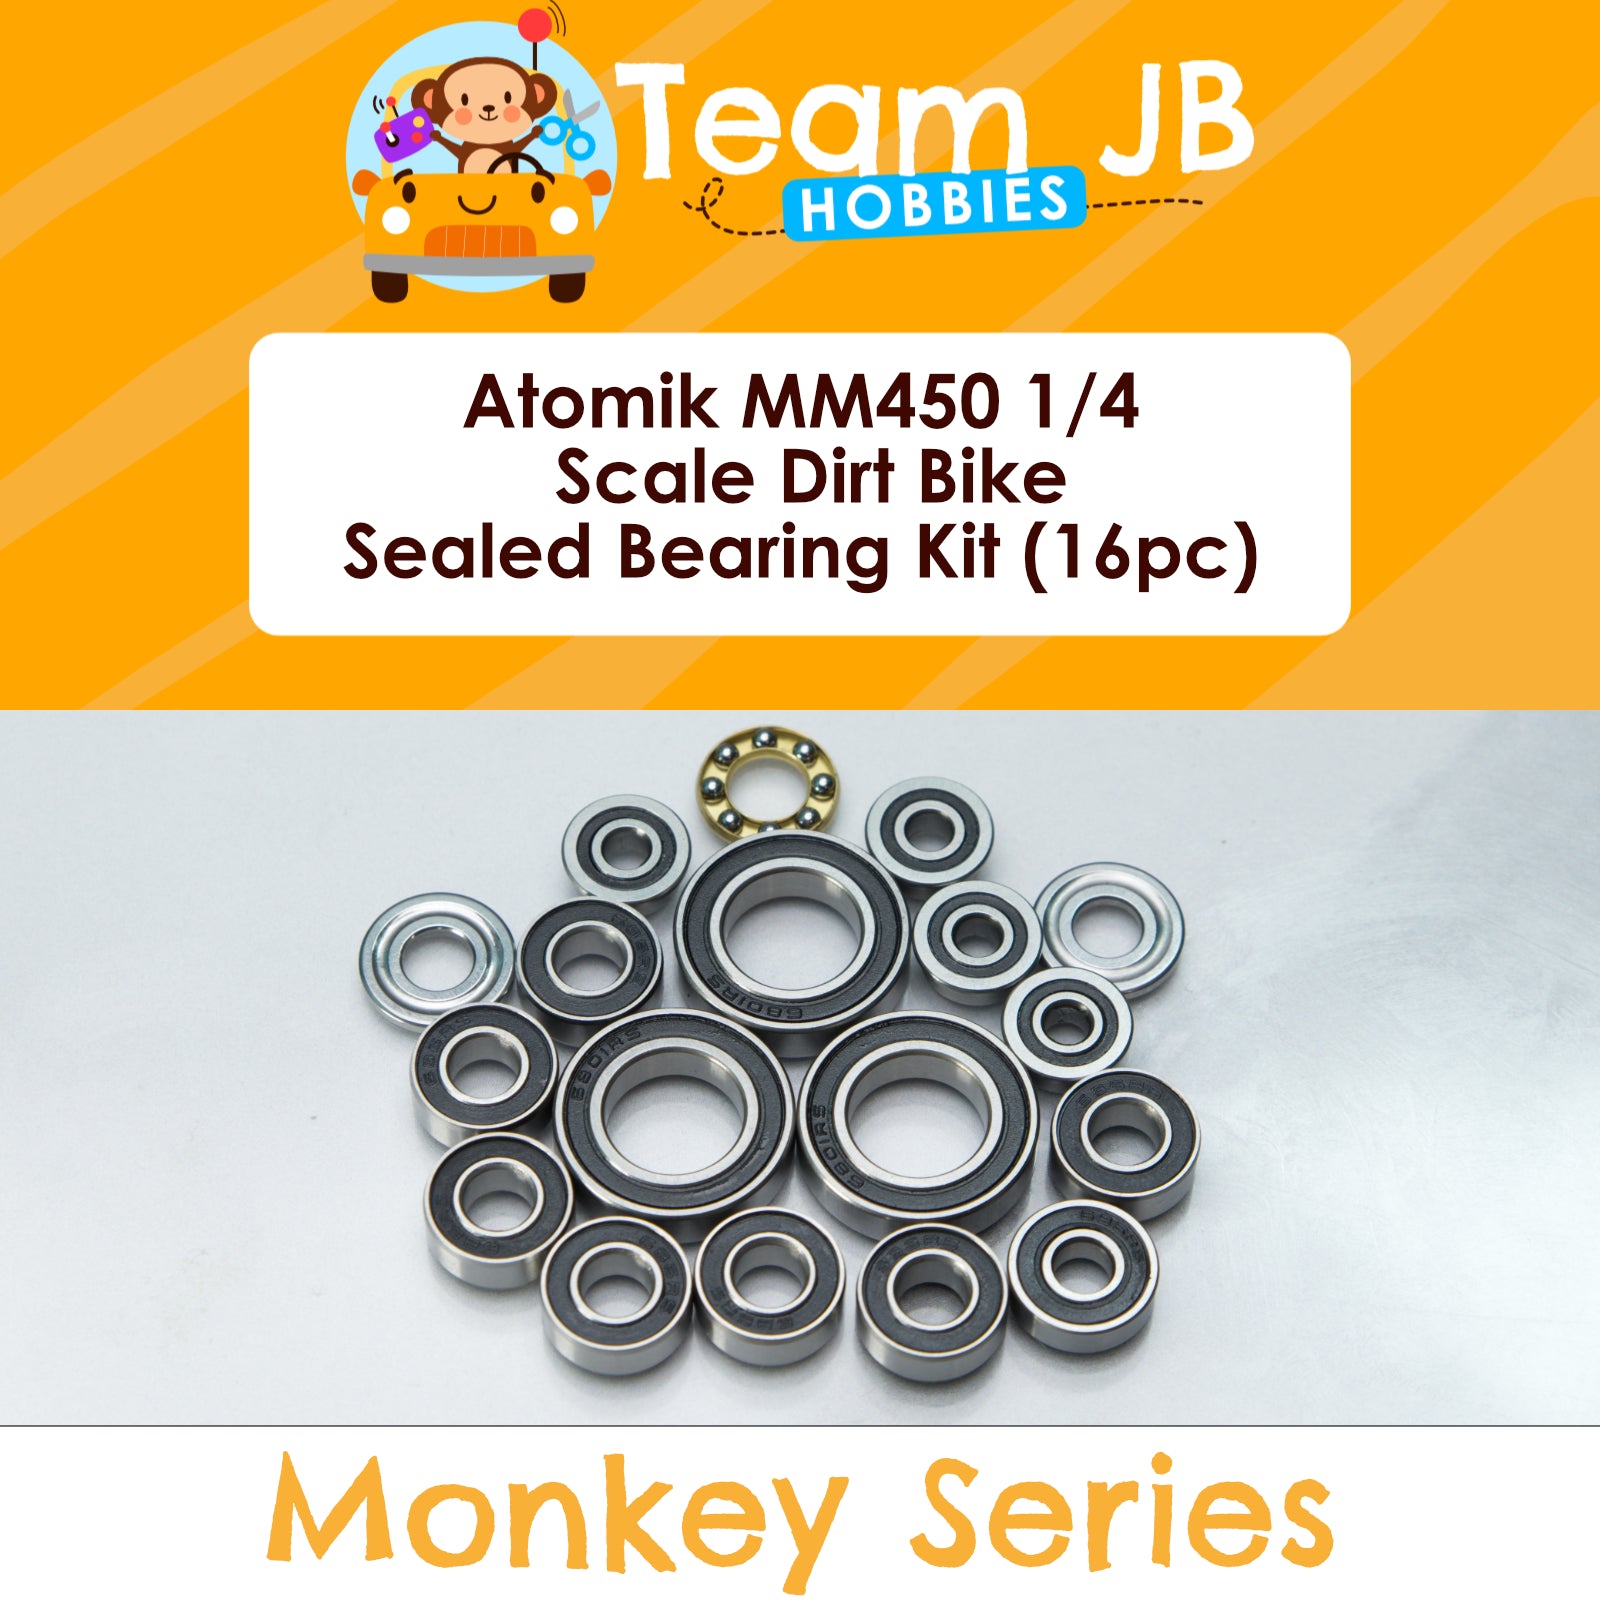 Atomik MM450 1/4 Scale Dirt Bike - Sealed Bearing Kit